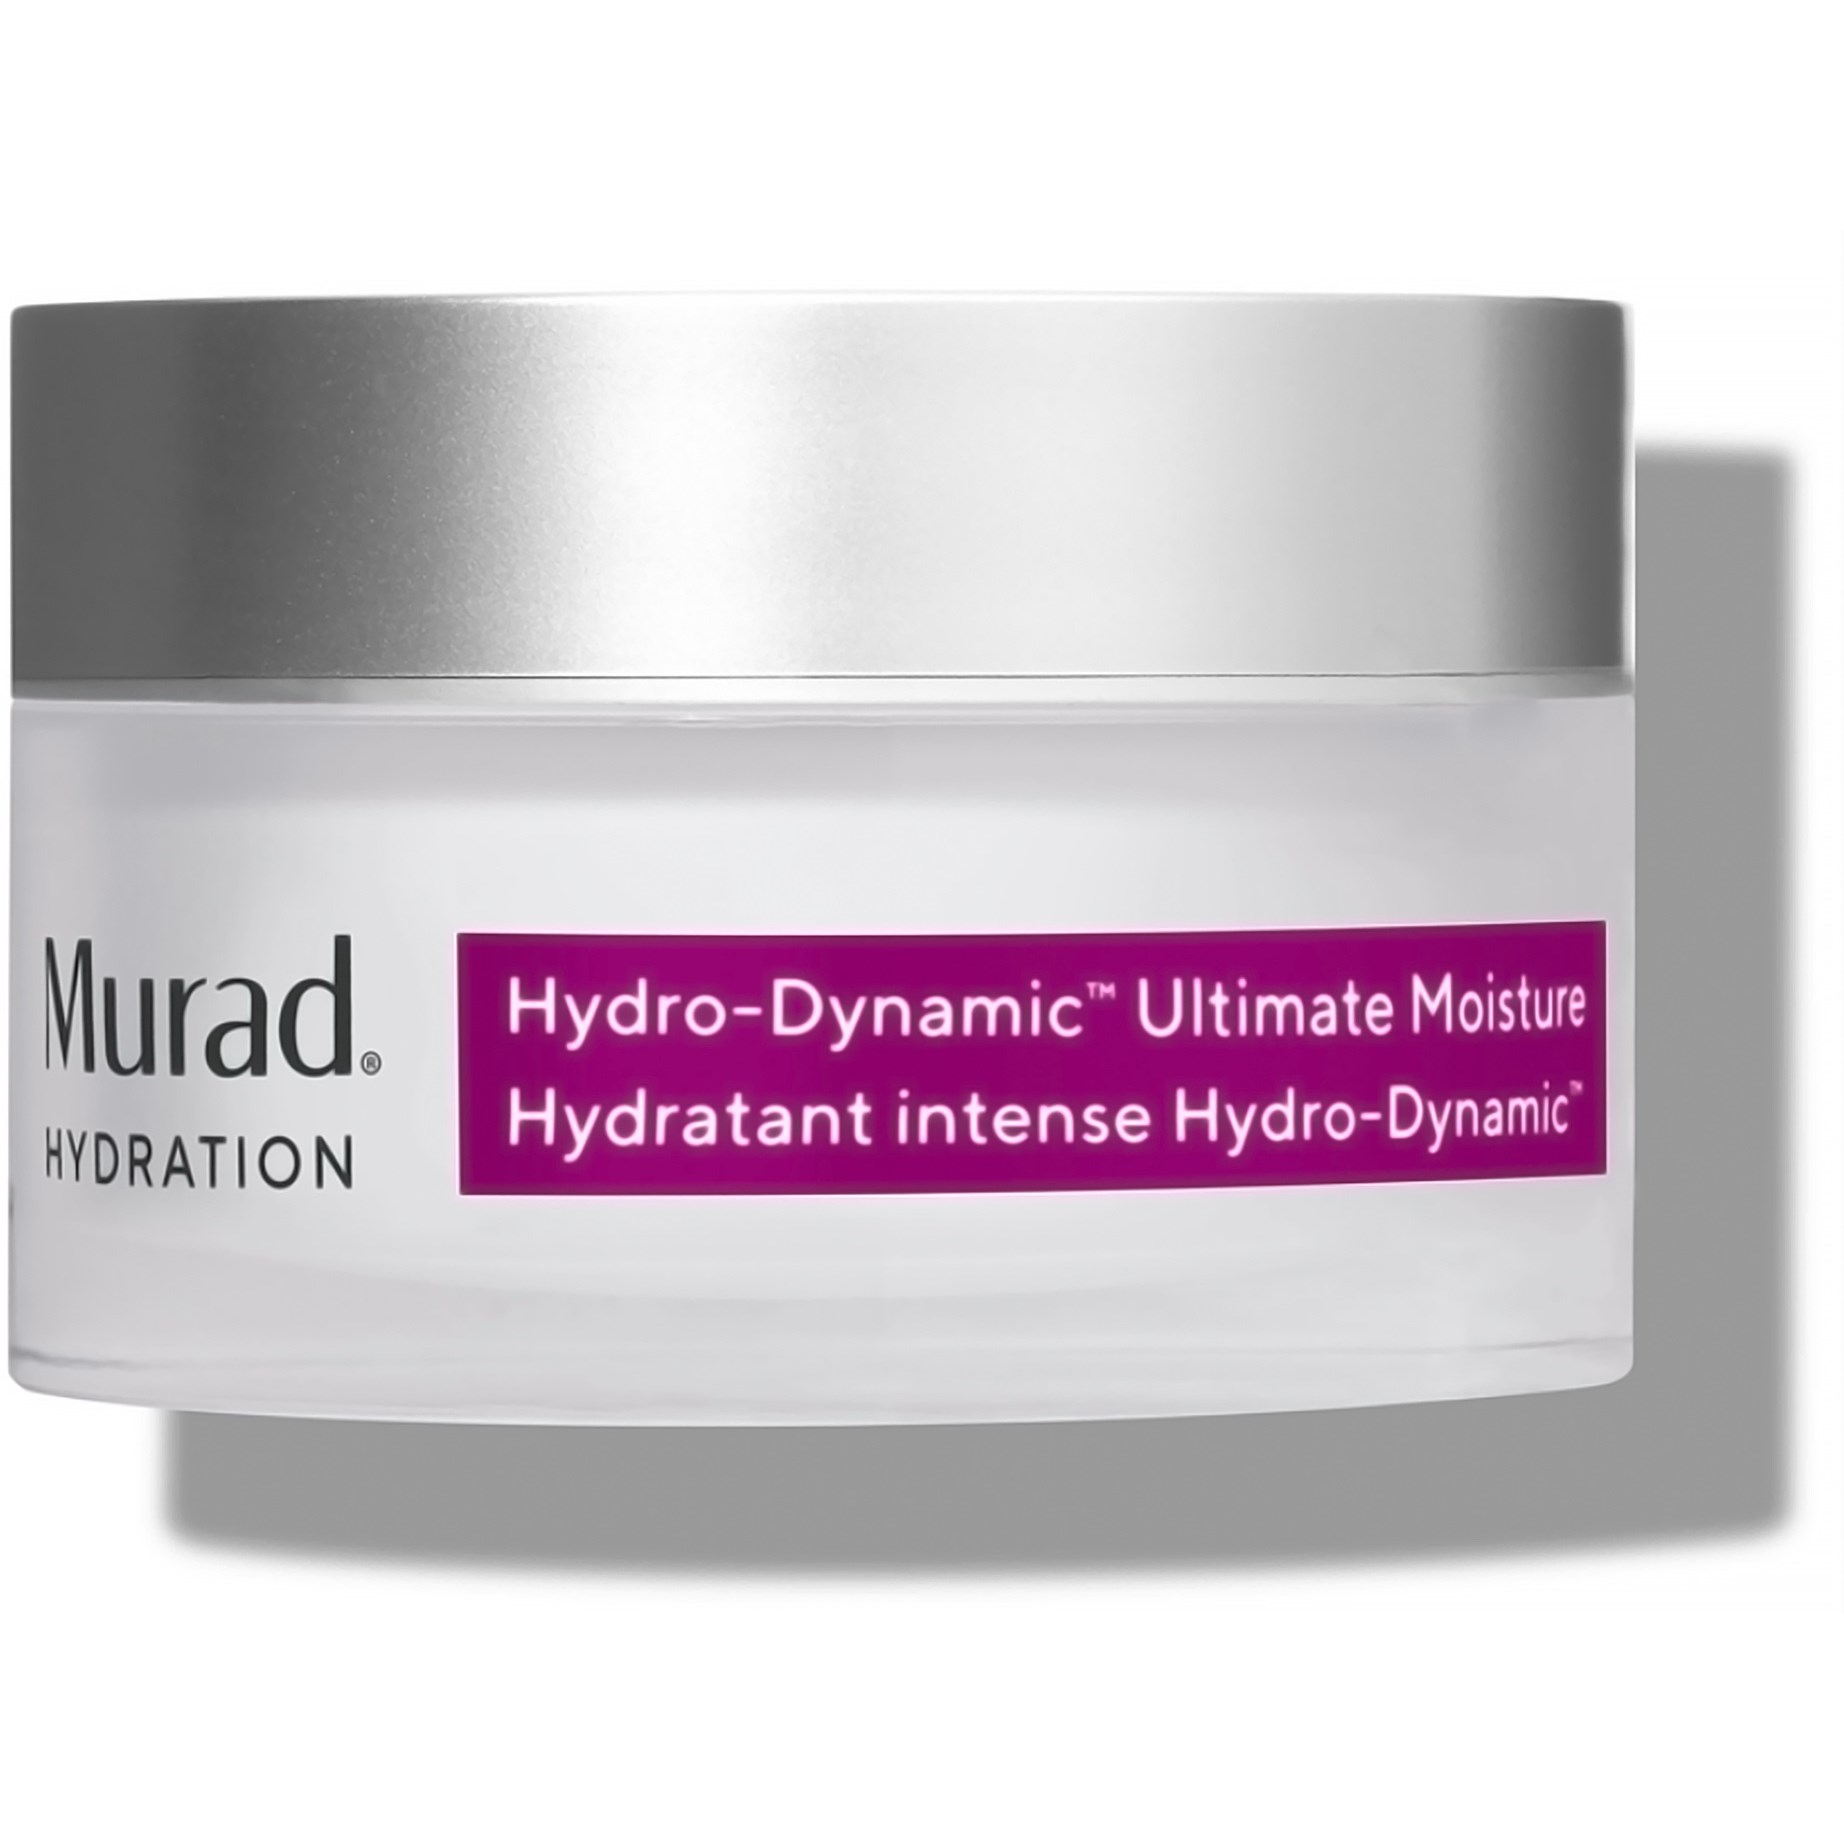 Bilde av Murad Hydration Hydro-dynamic Ultimate Moisture 50 Ml